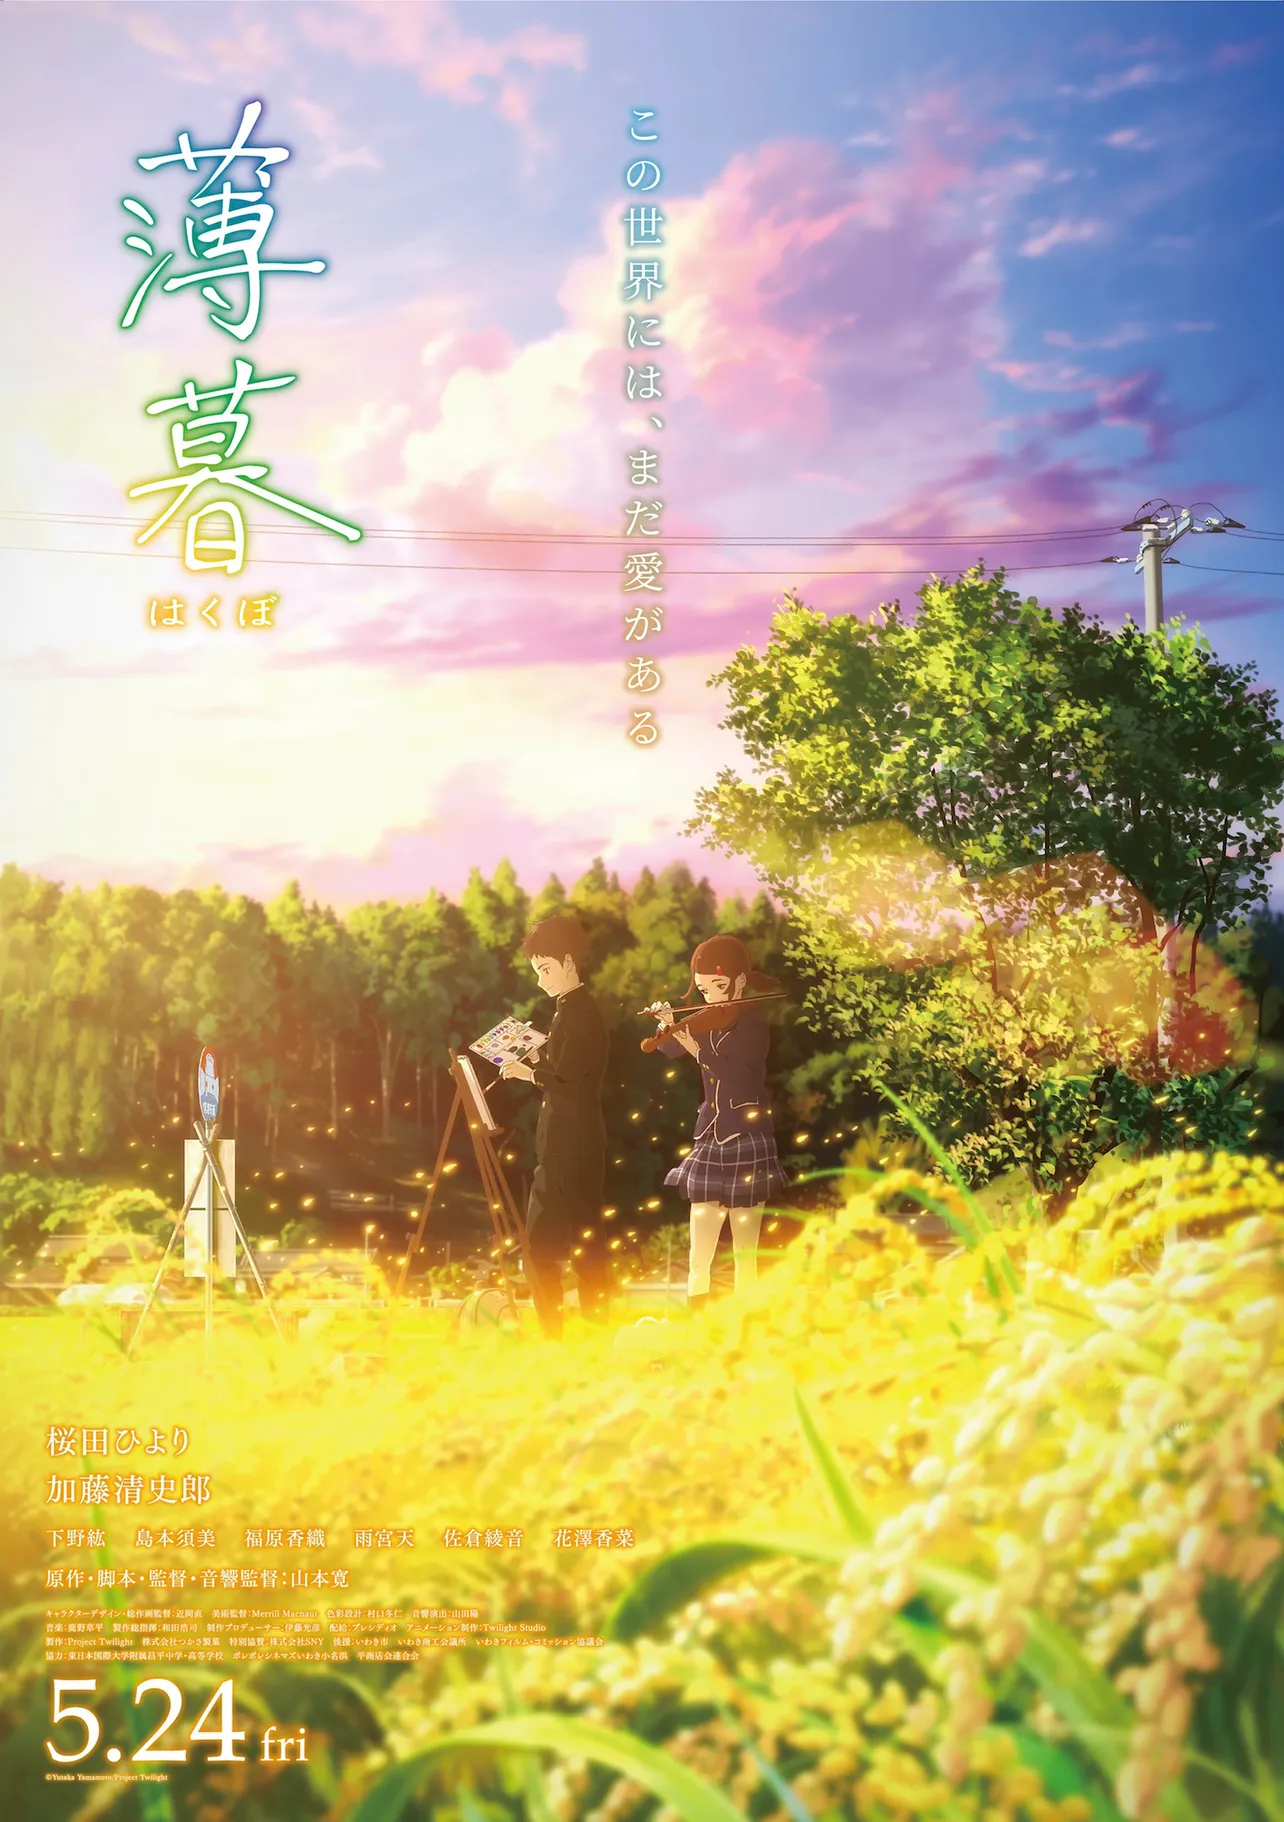 桜田ひよりと加藤清史郎が声優を務めるアニメ映画「薄暮」のポスターは、いわきの風景が印象的なビジュアルに